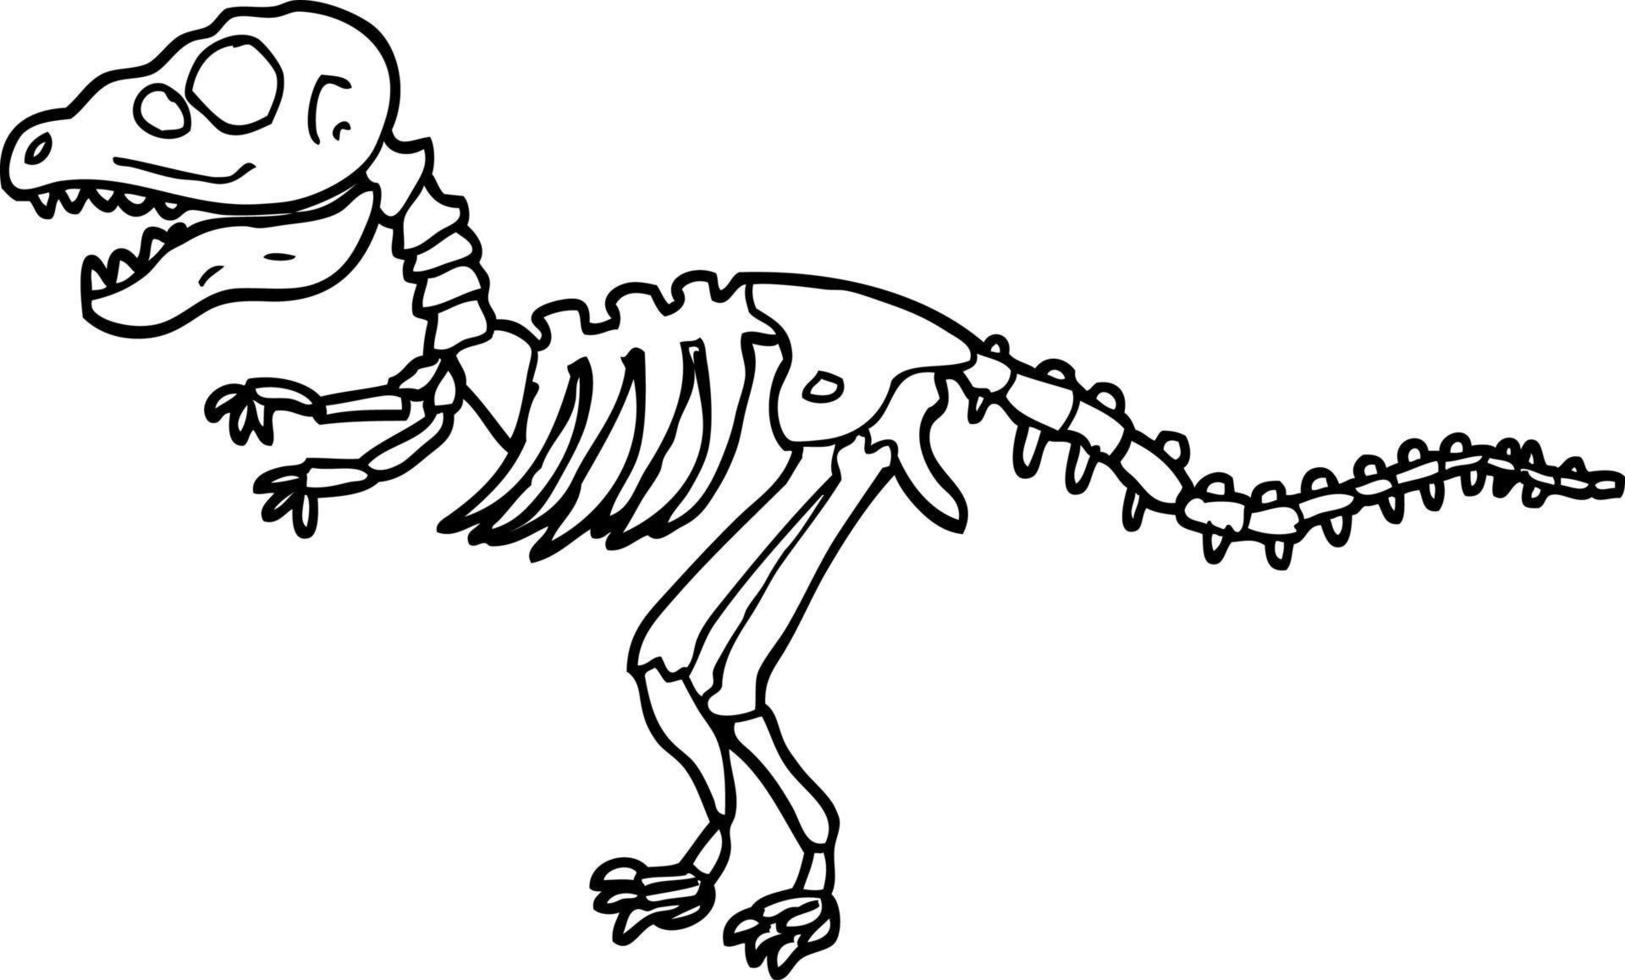 huesos de dinosaurio de dibujos animados en blanco y negro vector